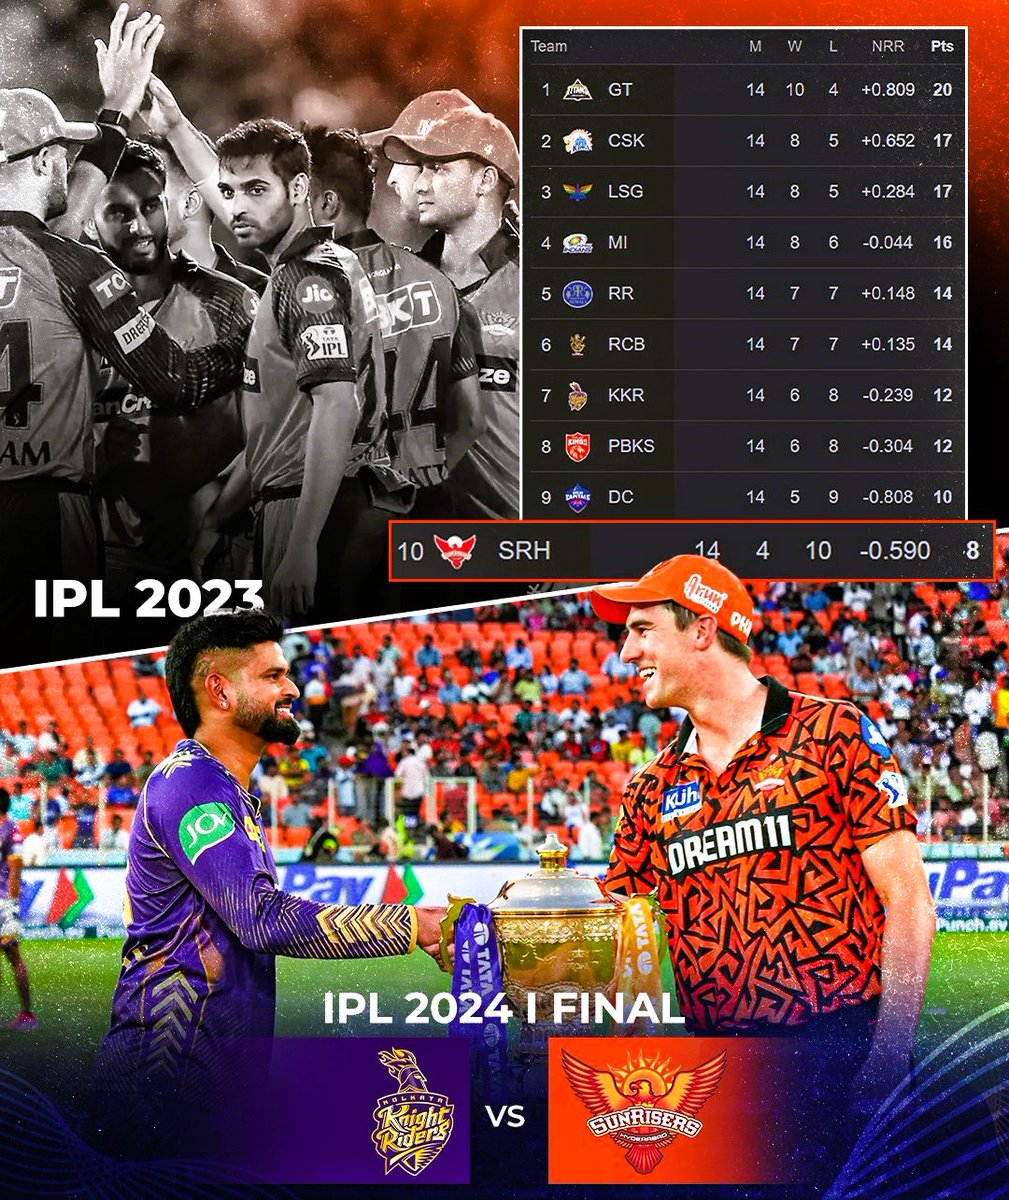 𝙎𝙐𝙉𝙍𝙄𝙎𝙀𝙍𝙎 𝙛𝙤𝙧 𝙖 𝙧𝙚𝙖𝙨𝙤𝙣! 🟠🌄 📸: Sportskeeda #IPL2024 #IPL #TATAIPL2024 #TATAIPL #India #Cricket